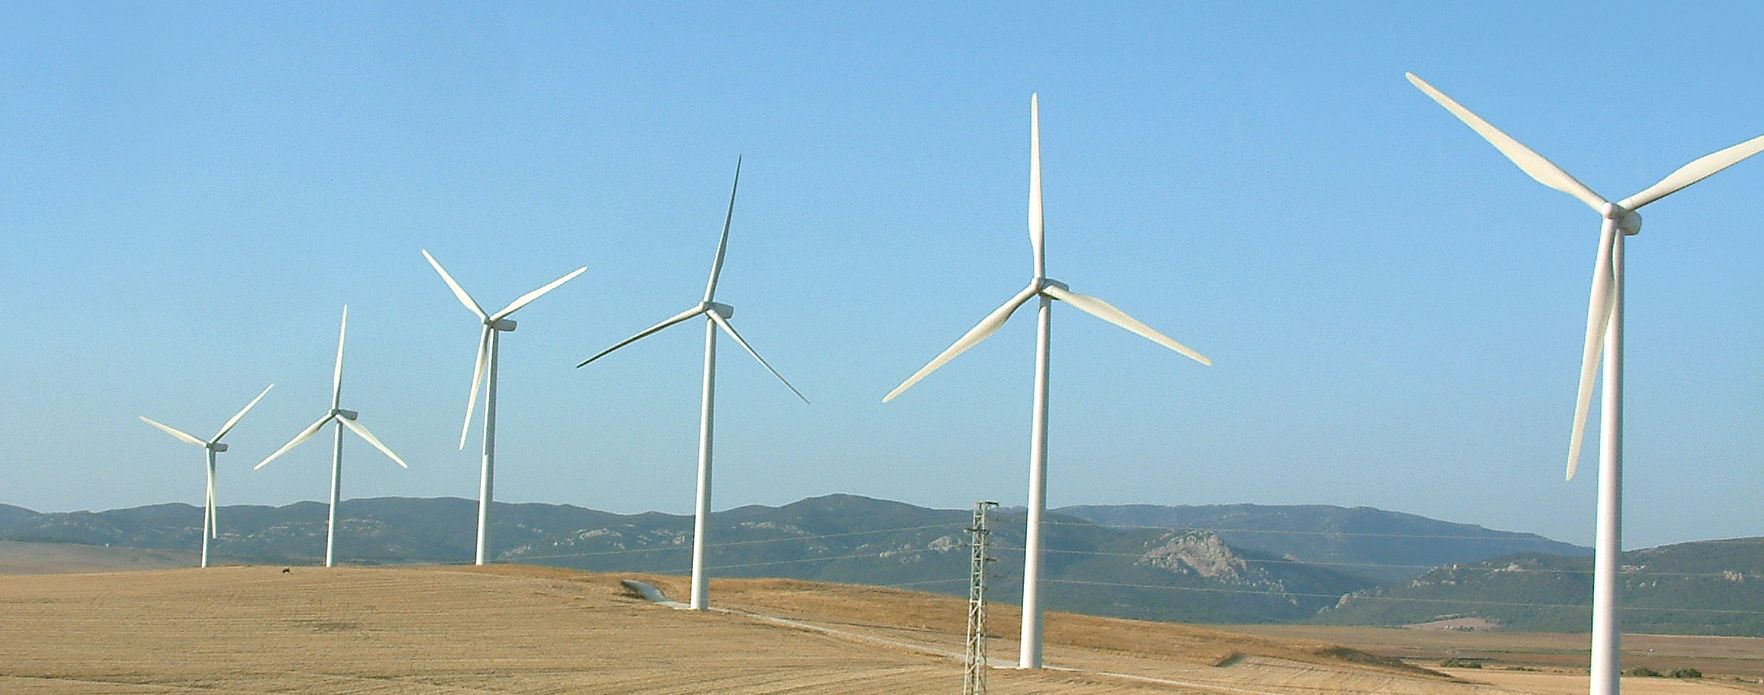 AleaSoft - Energia eolica